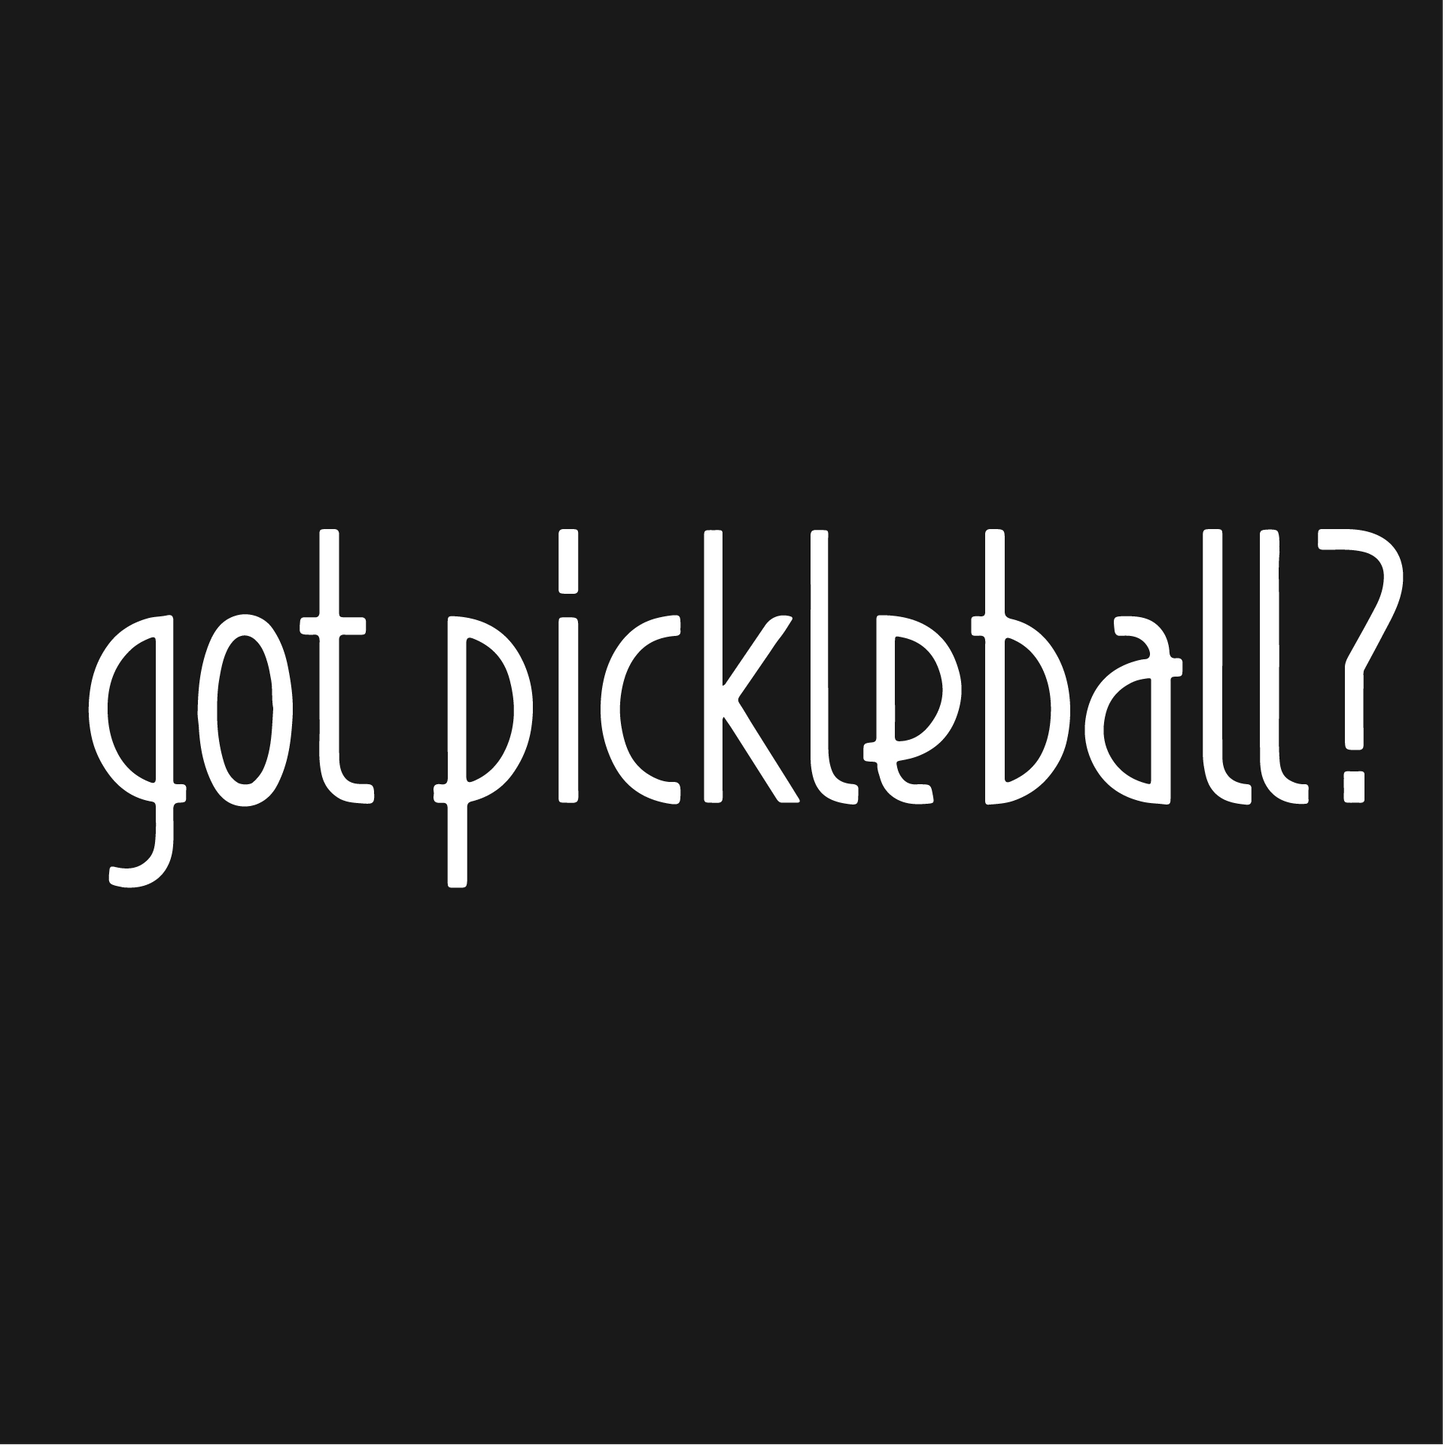 Got Pickleball? | Women's Pickleball Shorts